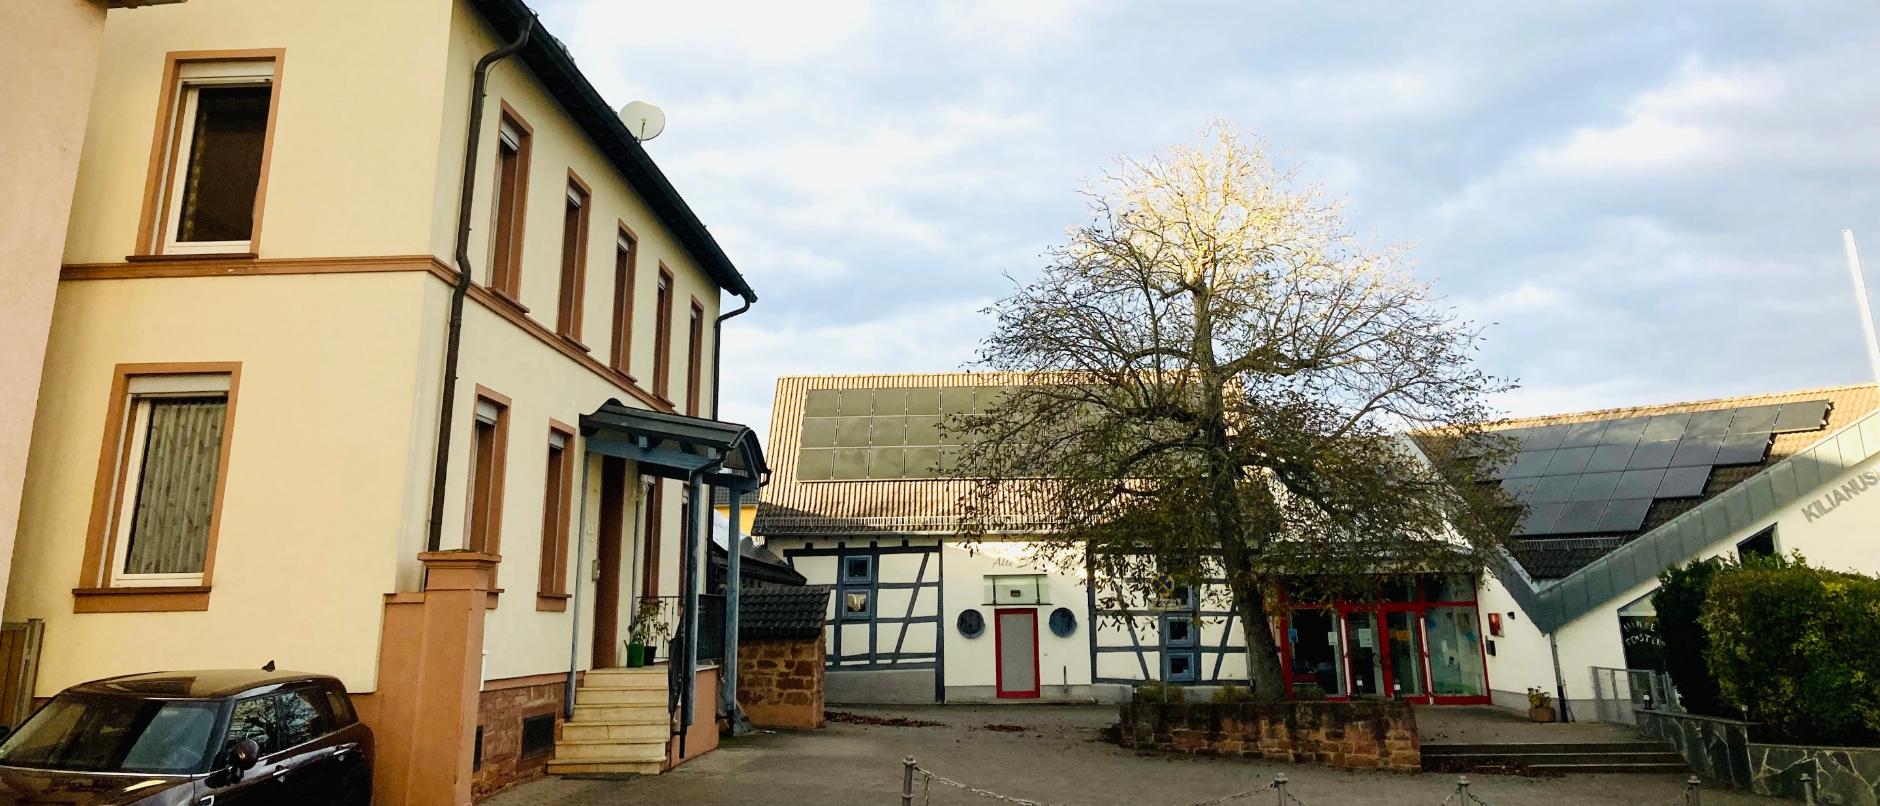 Pfarrbüro & Scheune St. Kilian Mainflingen